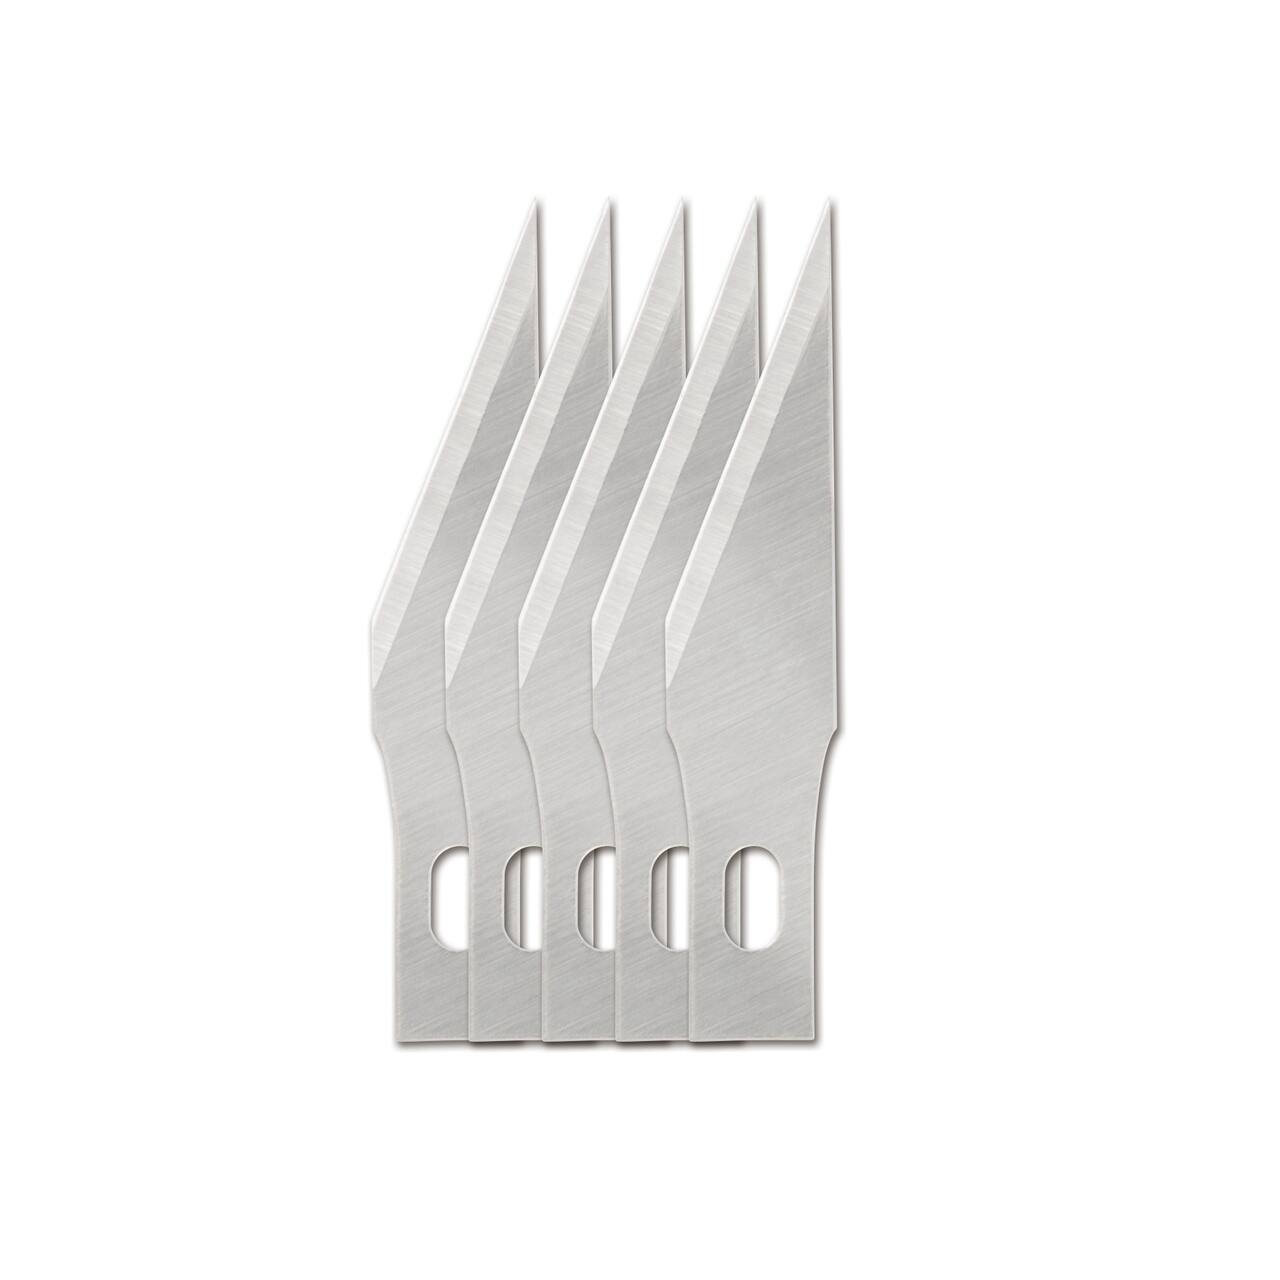 Fiskars&#xAE; Standard #11 Blades, 5ct